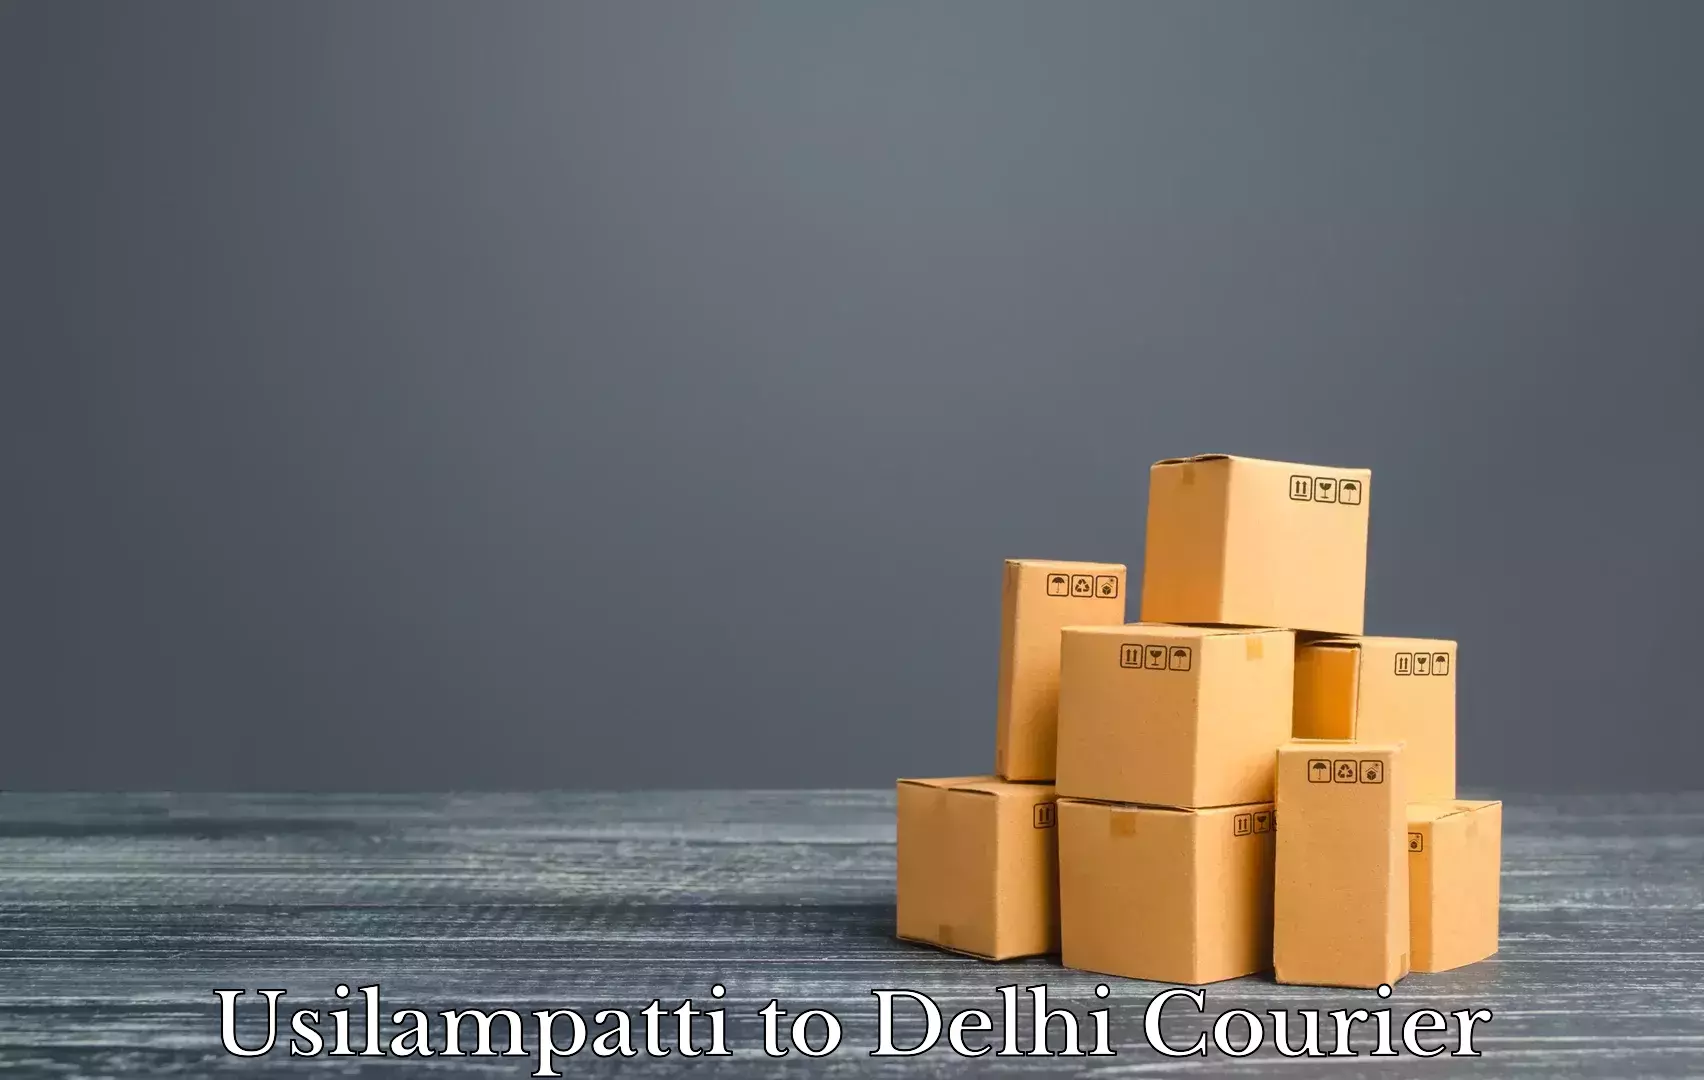 Furniture transport specialists Usilampatti to Delhi